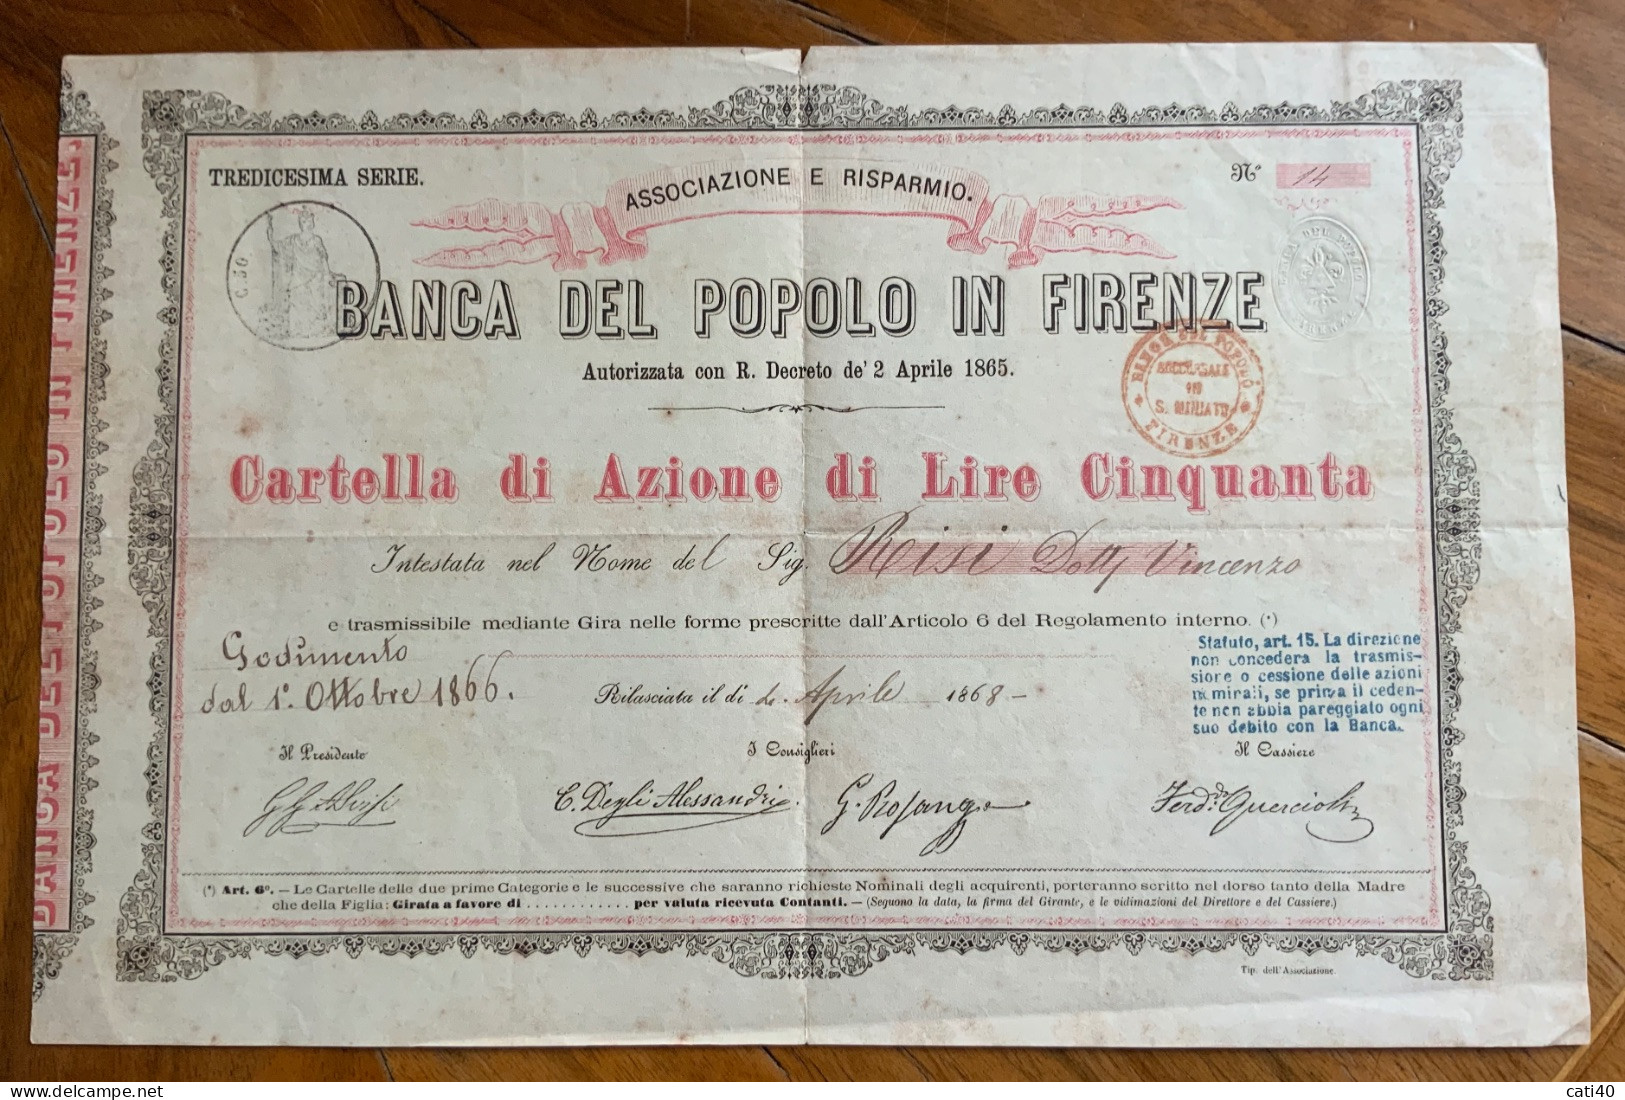 BANCA DEL POPOLO IN FIRENZE - CARTELLA DI AZIONE DA LIRE CINQUANTA - 1866  - TREDICESIMA SERIE - Transportmiddelen